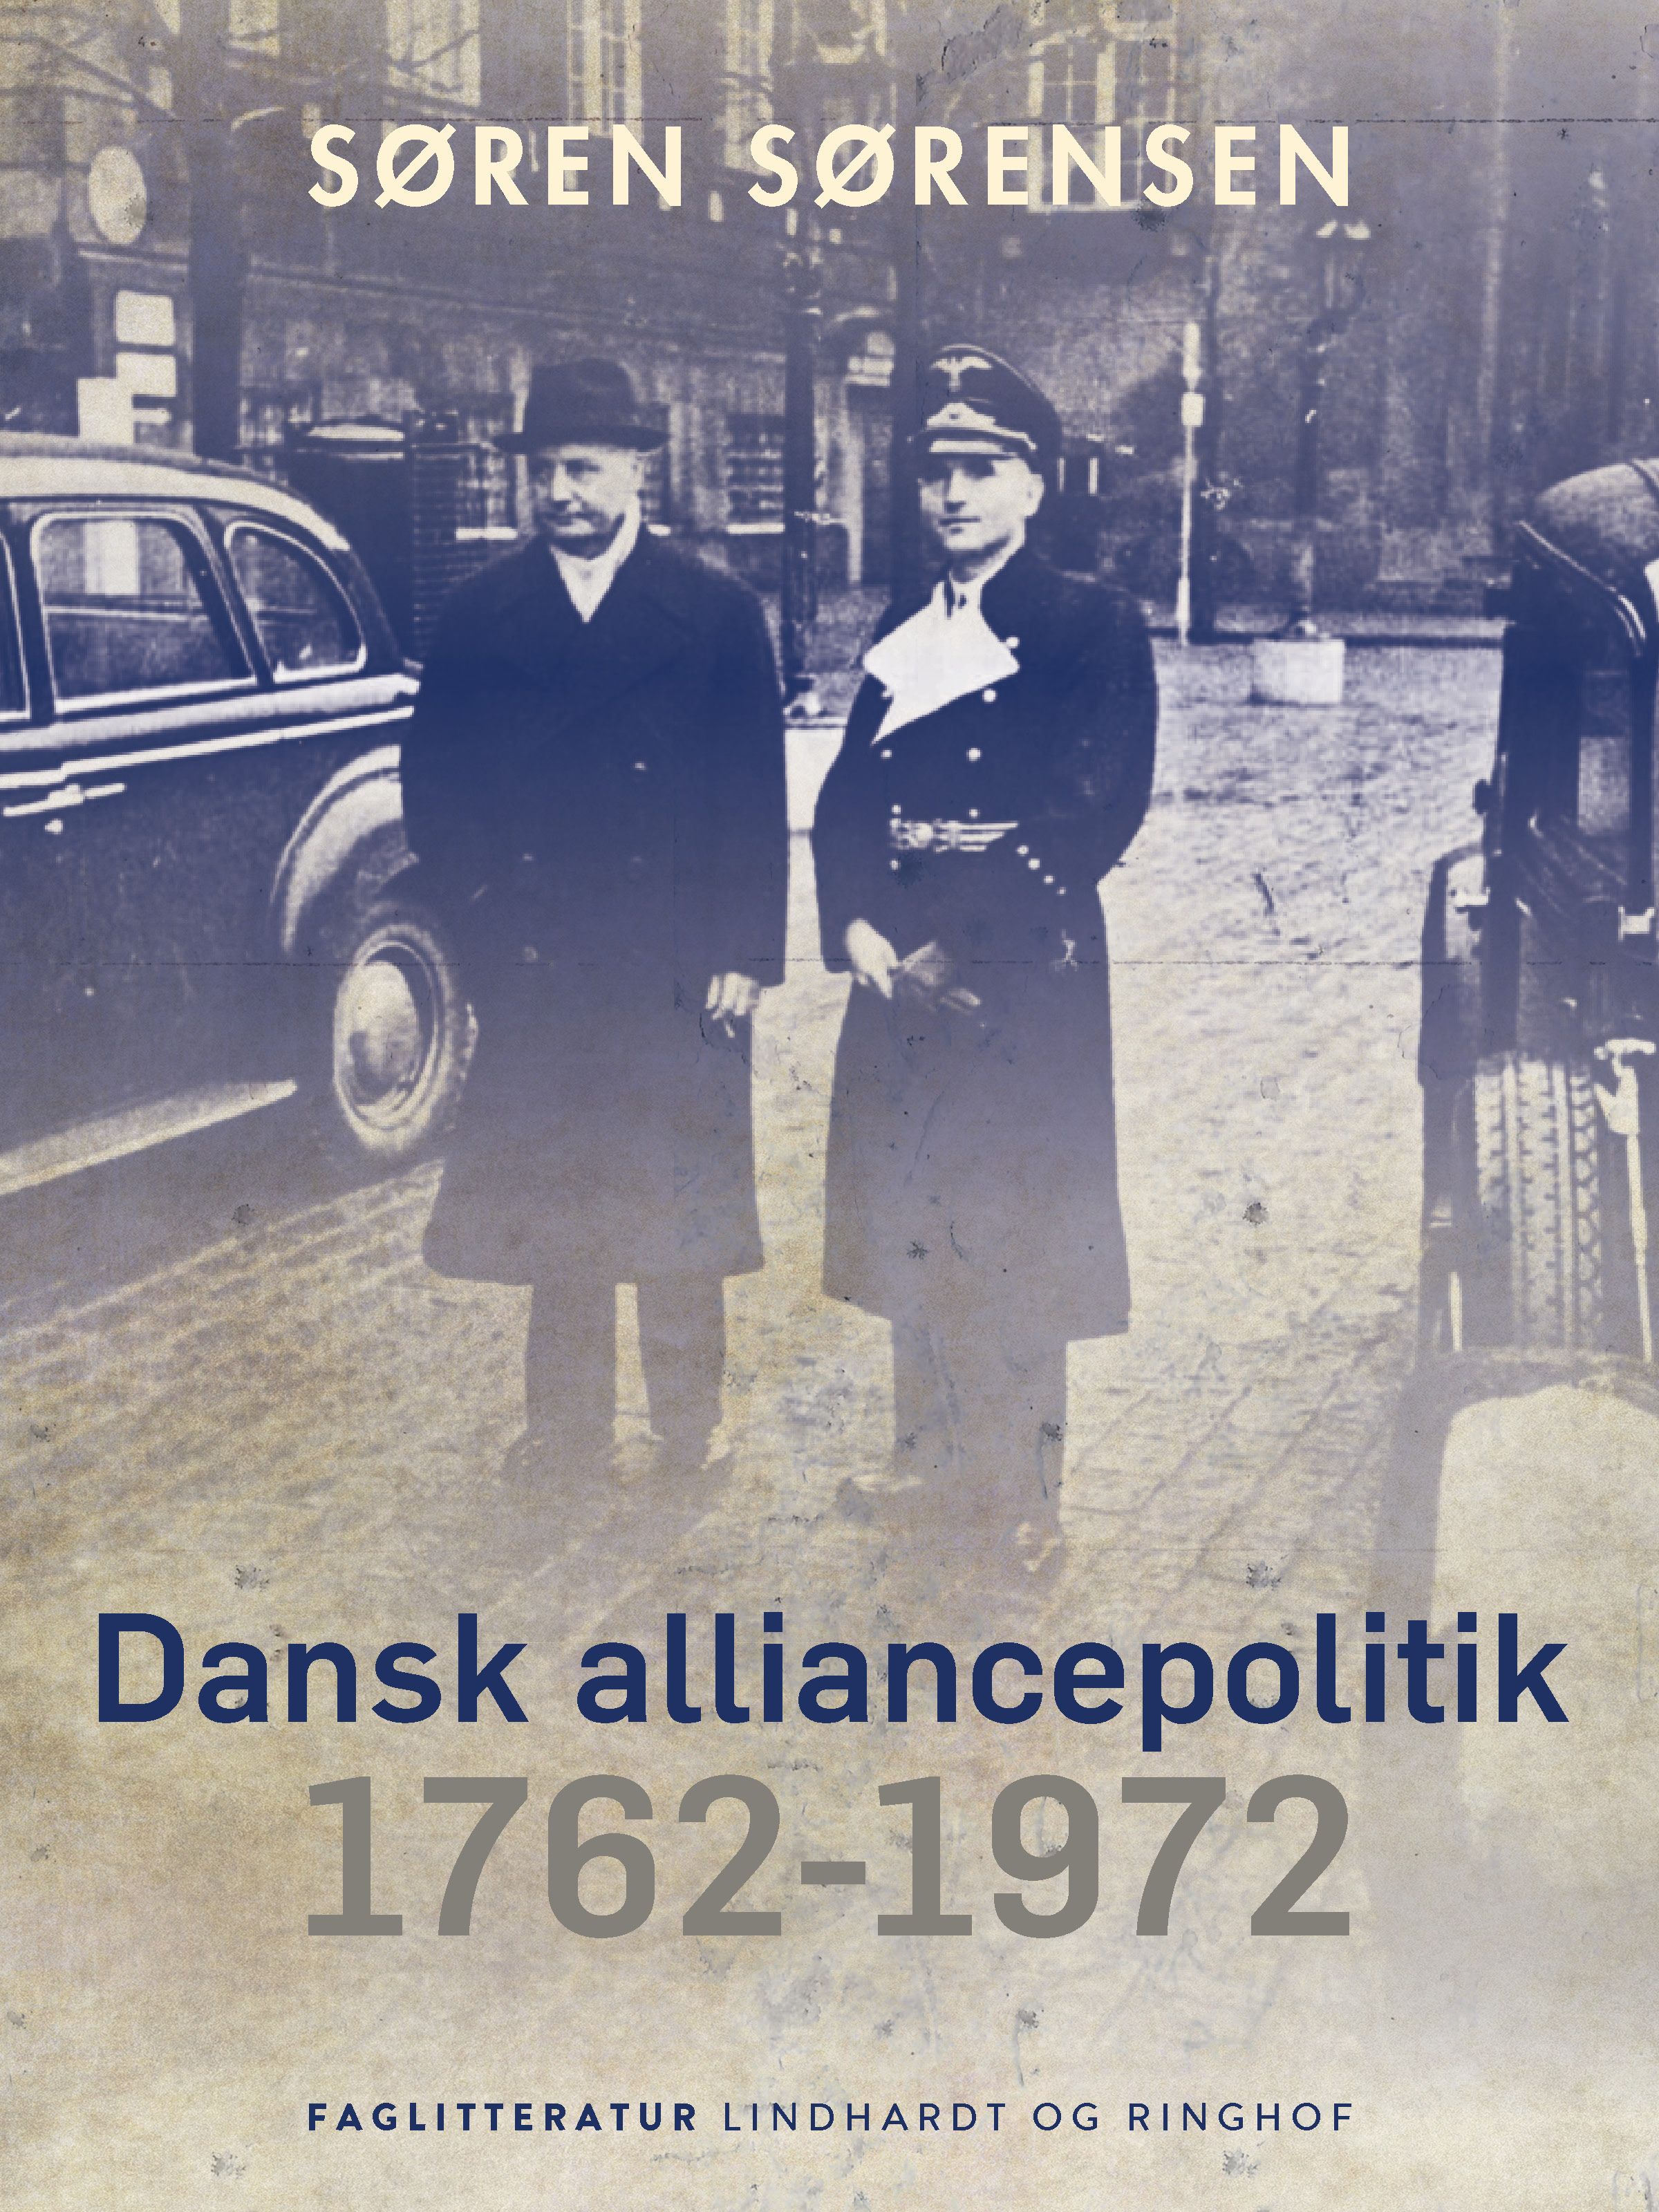 Dansk alliancepolitik 1762-1972, e-bog af Søren Sørensen